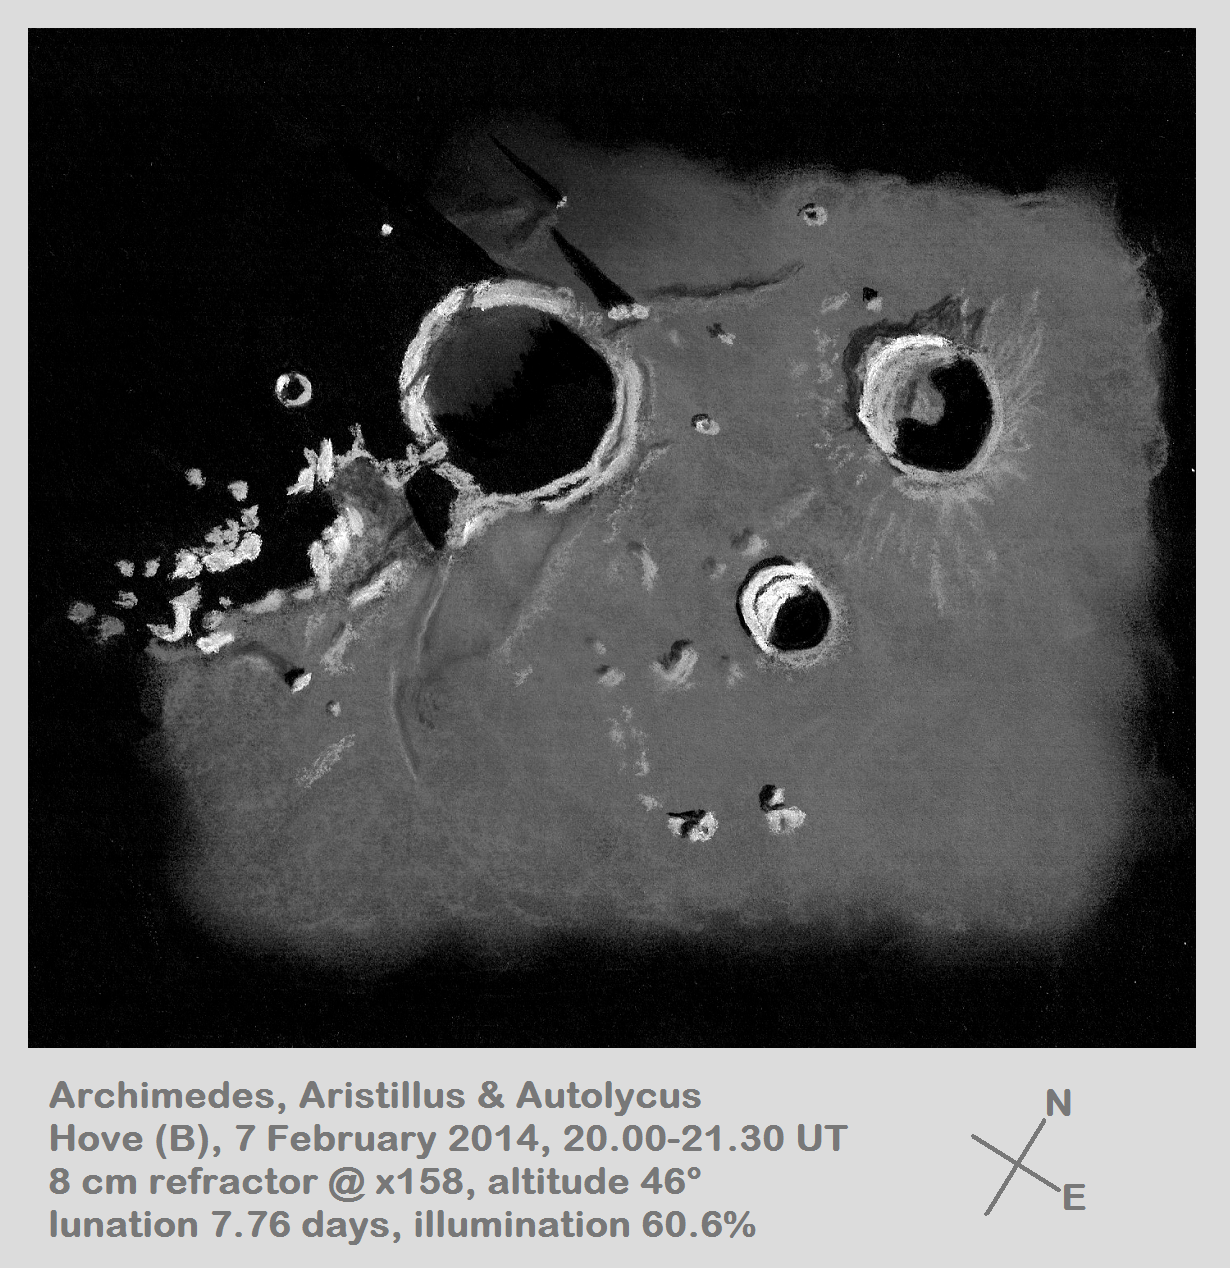 Lunar 027: Archimedes (large crater lacking central peak)